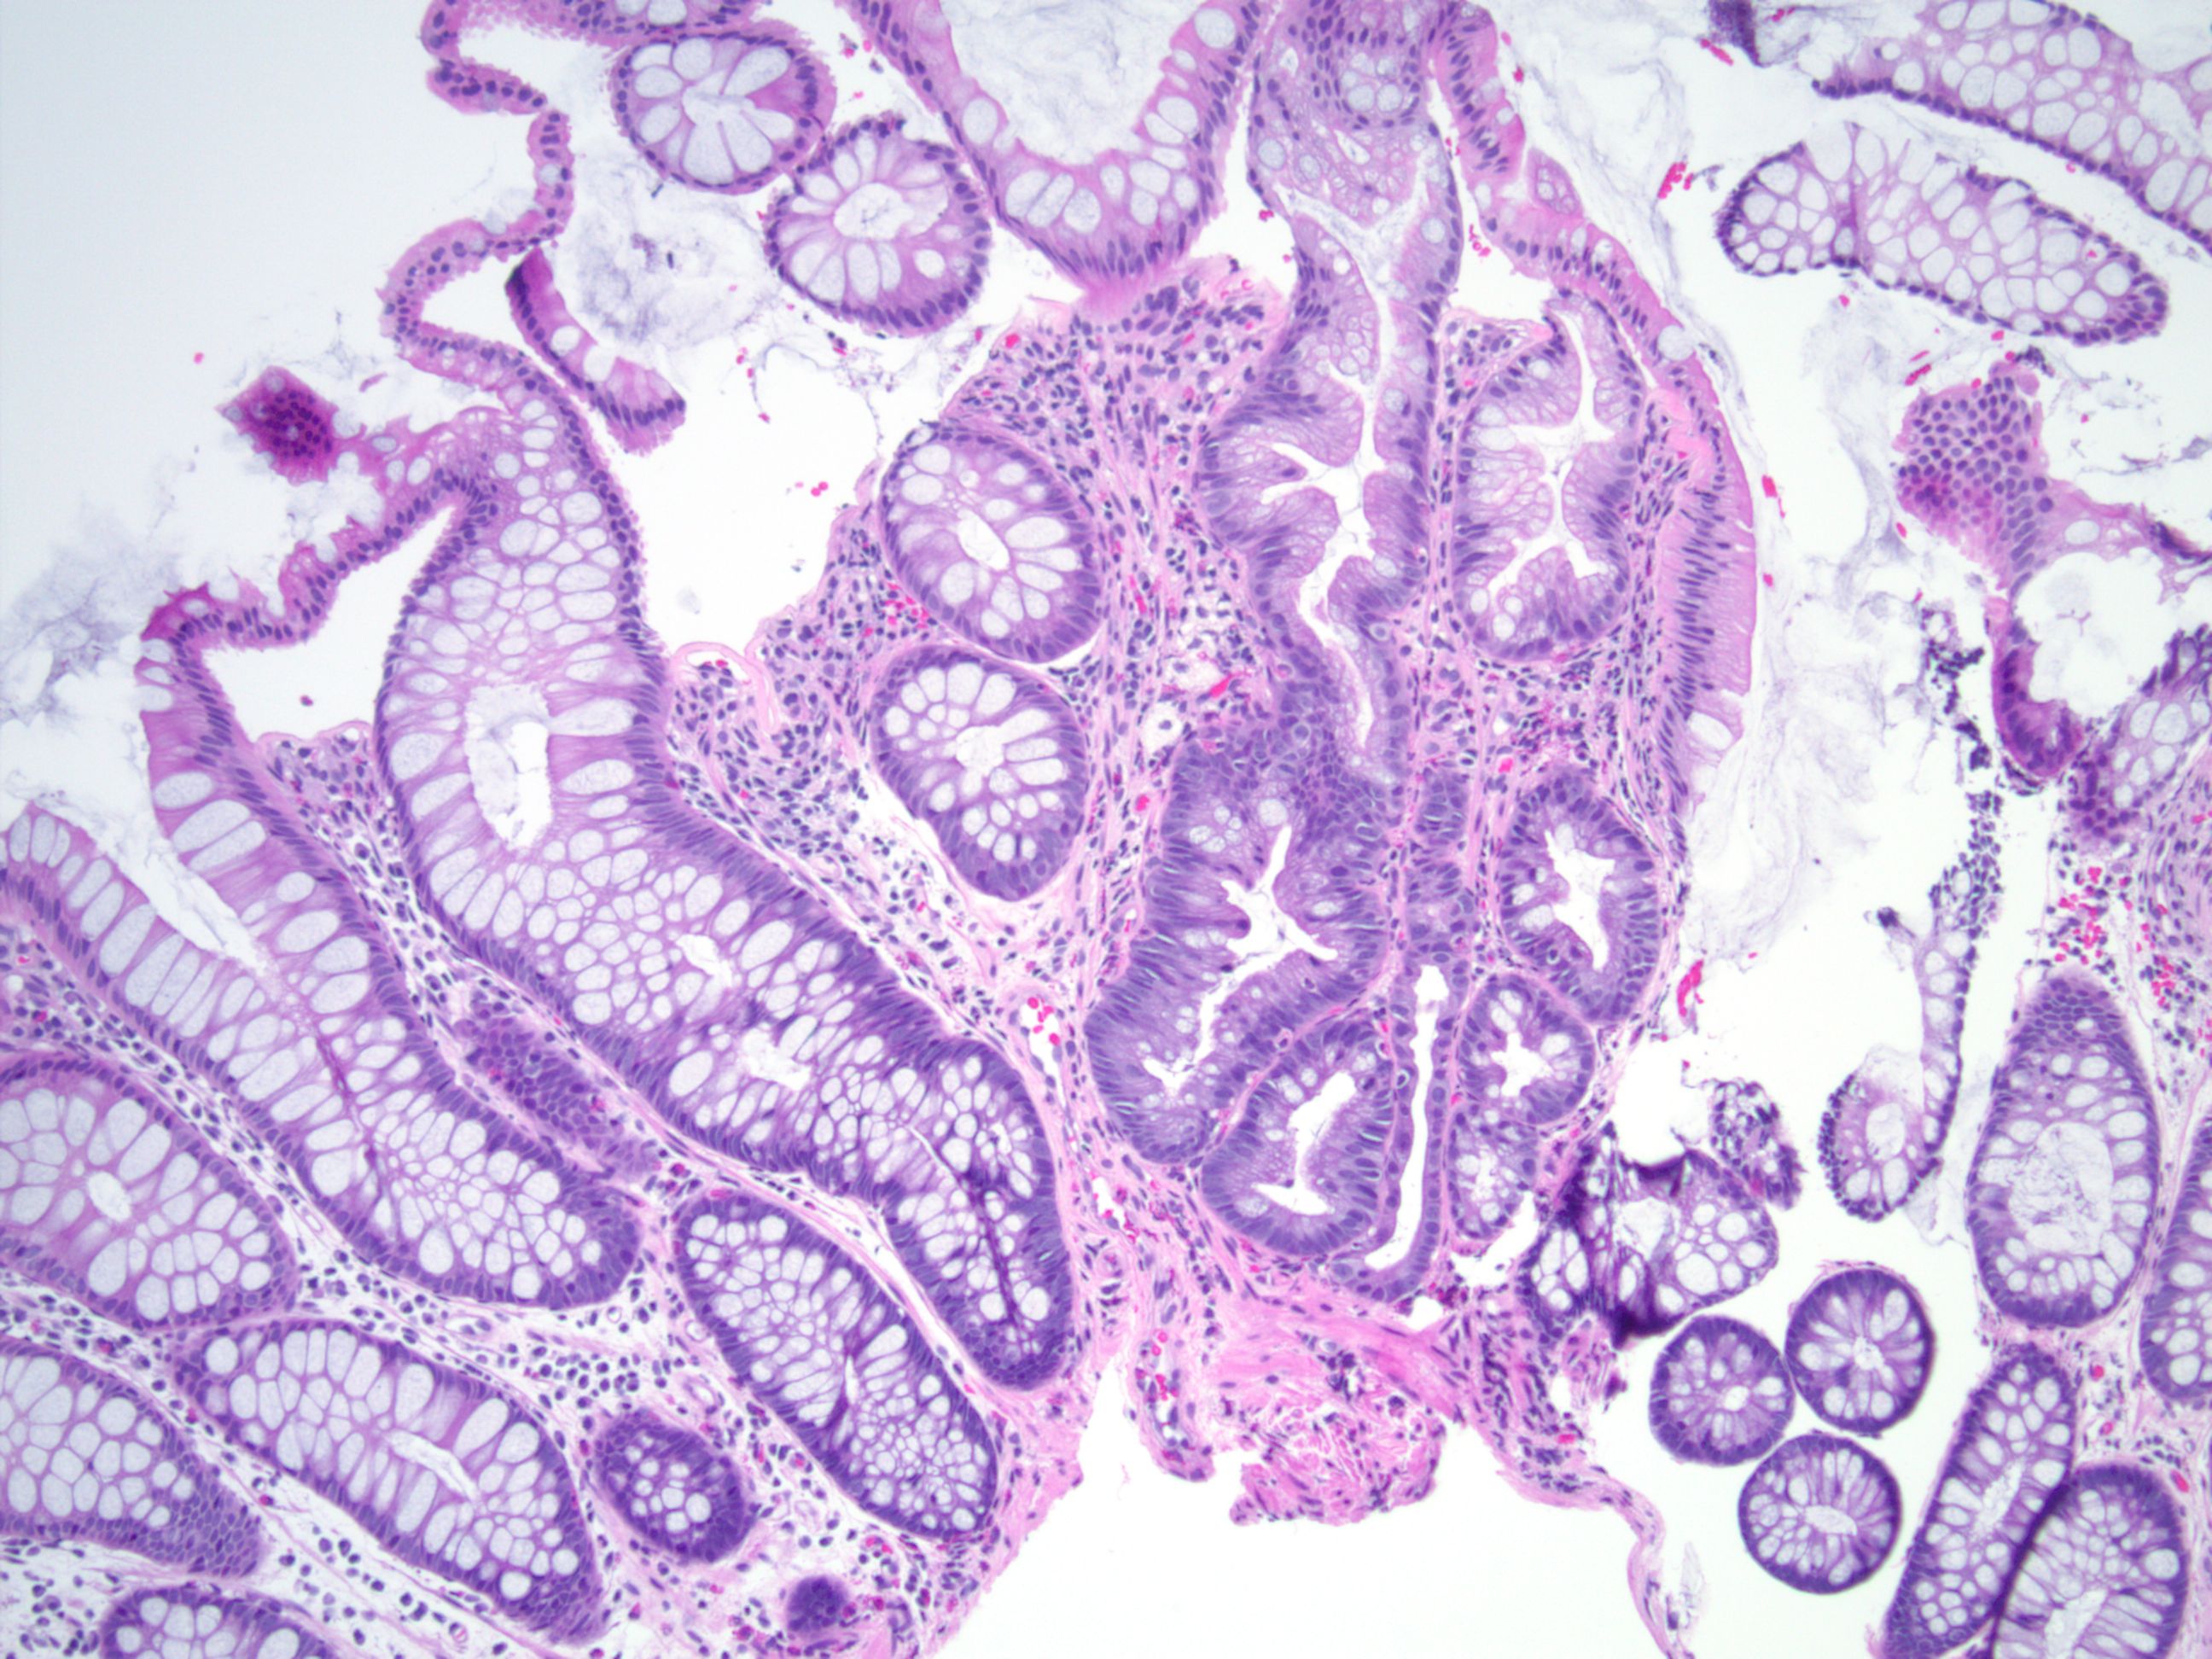 GC-C -/- 小鼠在DSS诱导下肠道炎症损伤的变化